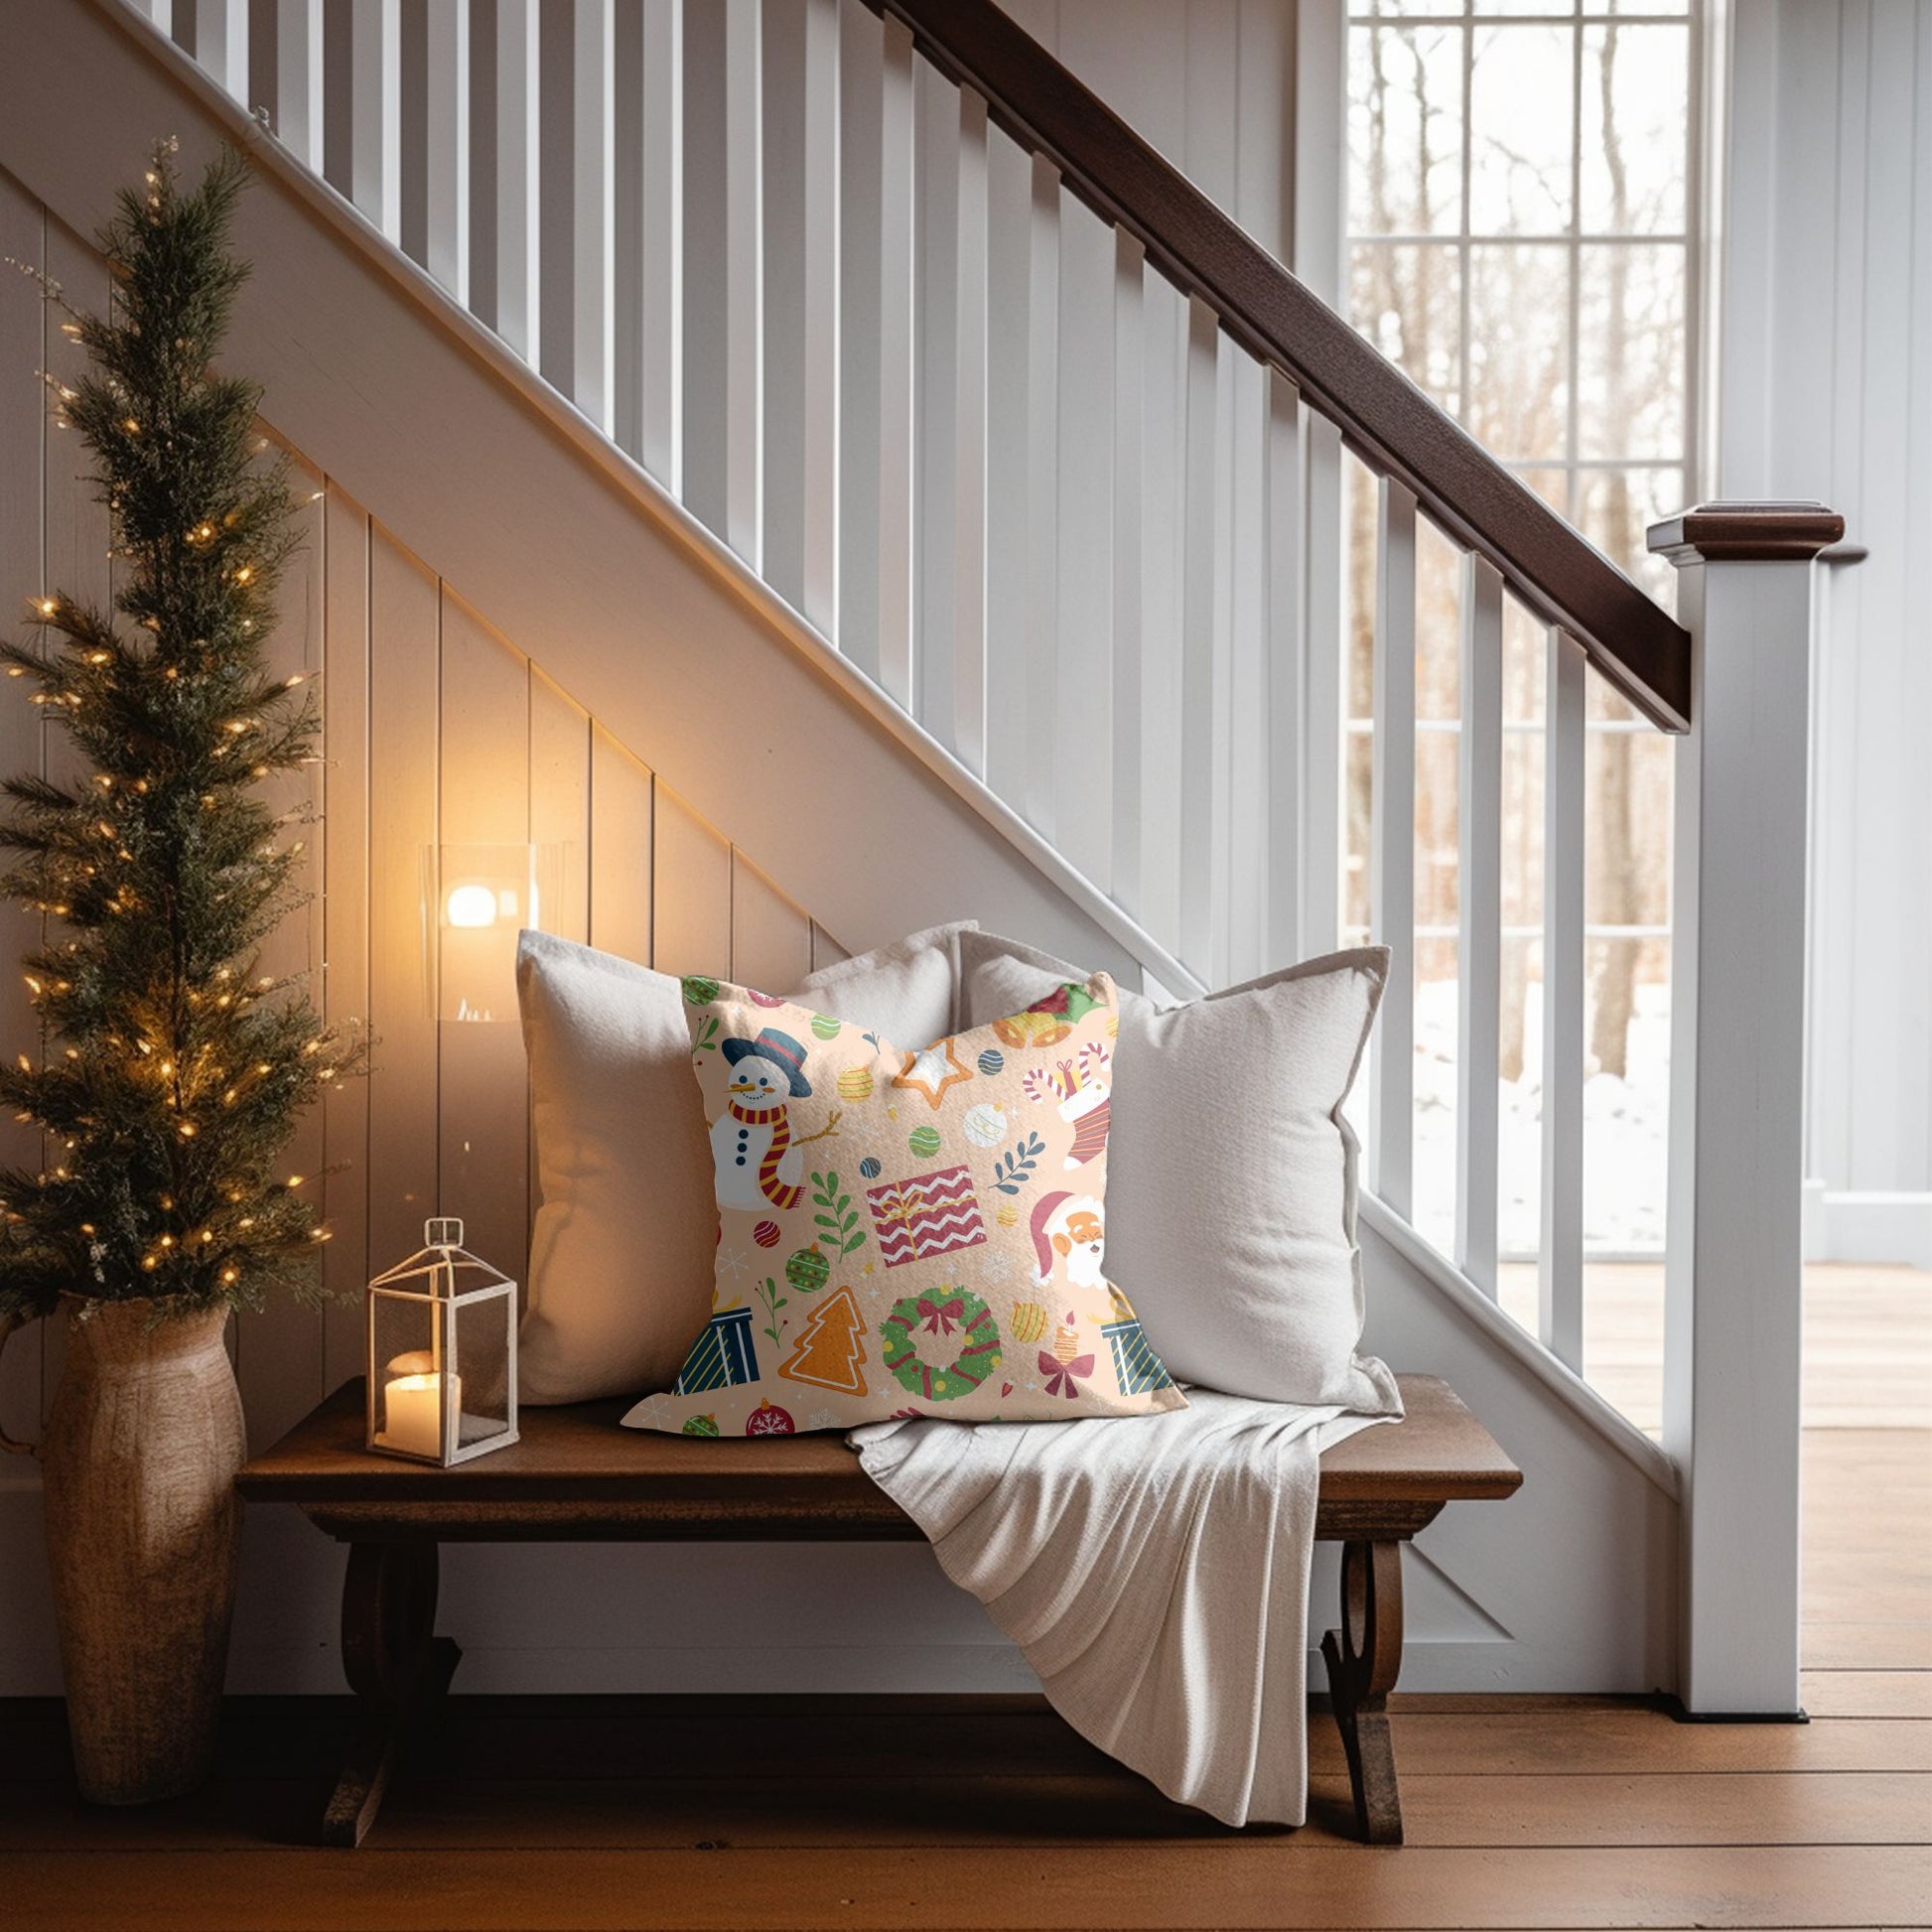 High-Quality Christmas Plaid Decorative Pillow